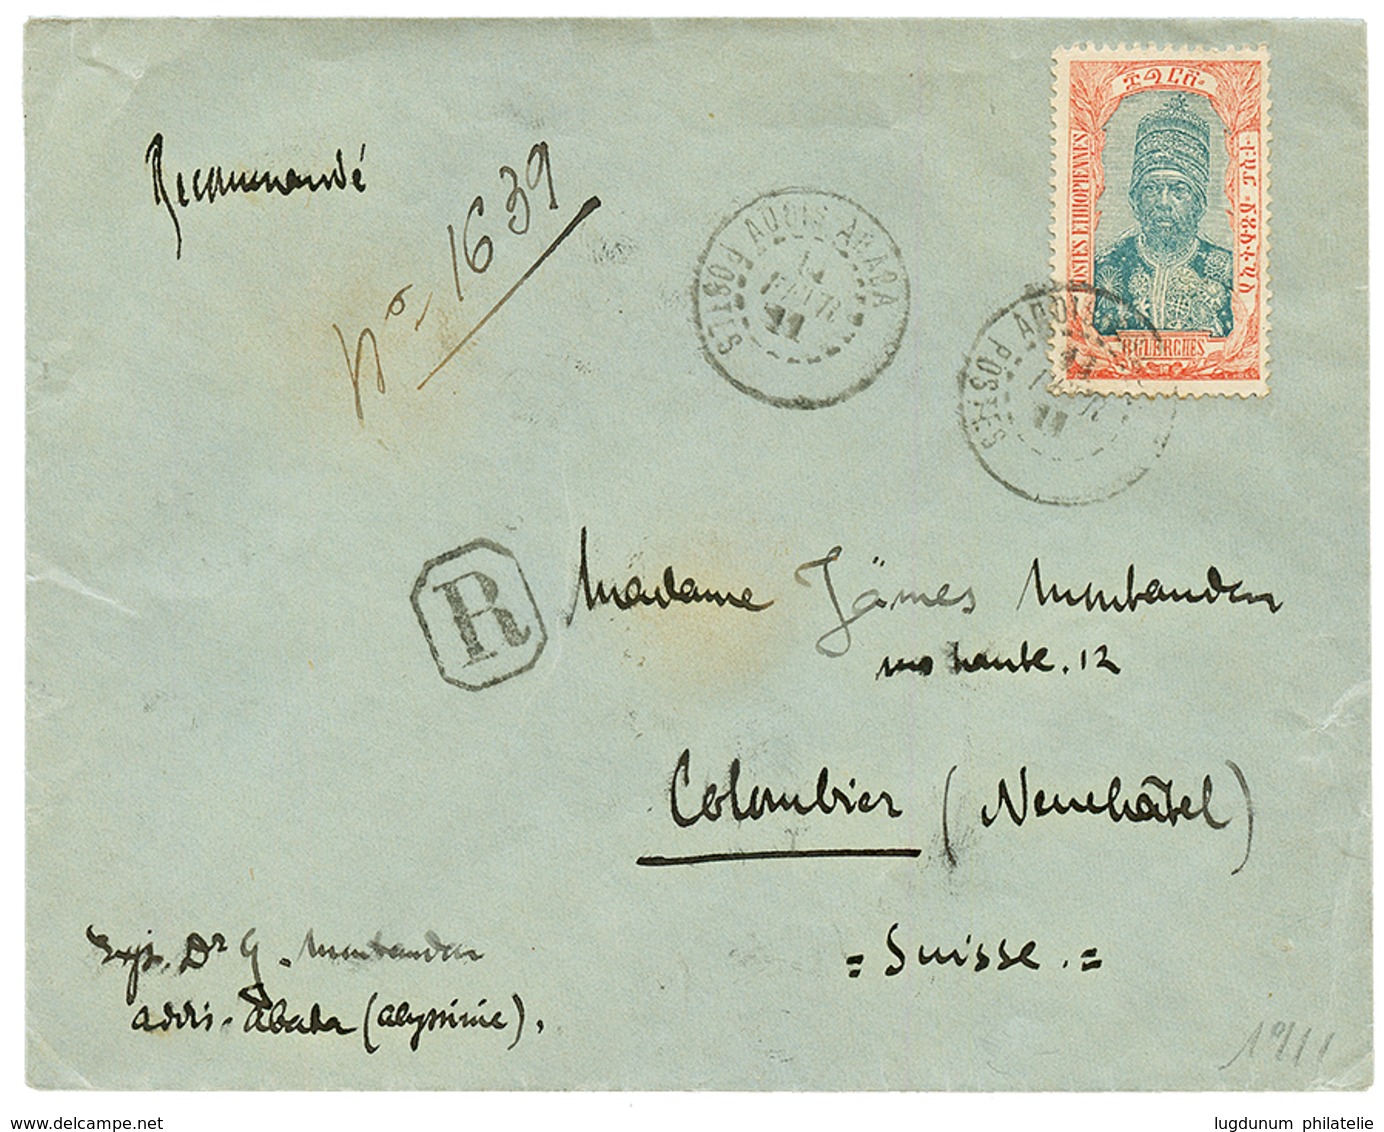 1911 8g Canc. ADDIS ABABA POSTES (french Type) On REGISTERED Envelope To SWITZERLAND. Scarce. Vvf. - Ethiopia